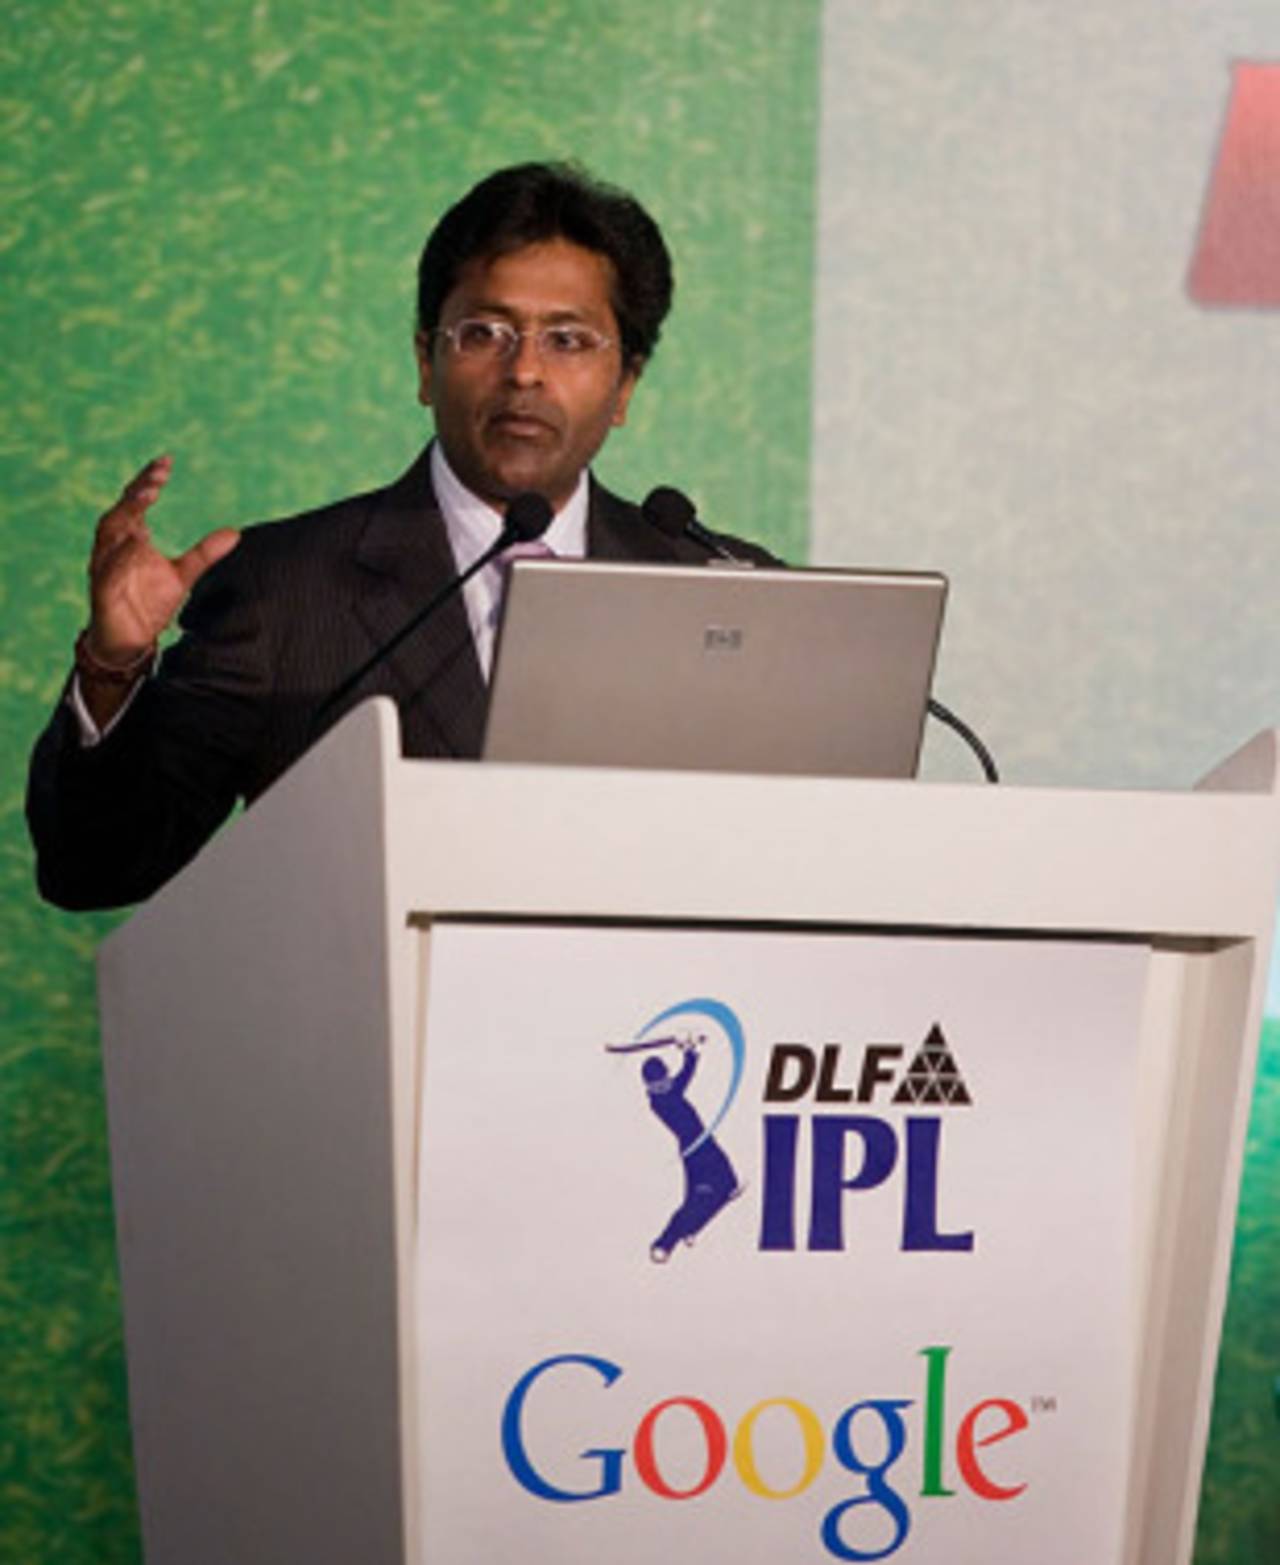 Lalit Modi announces the IPL-Google deal, Mumbai, January 20, 2010